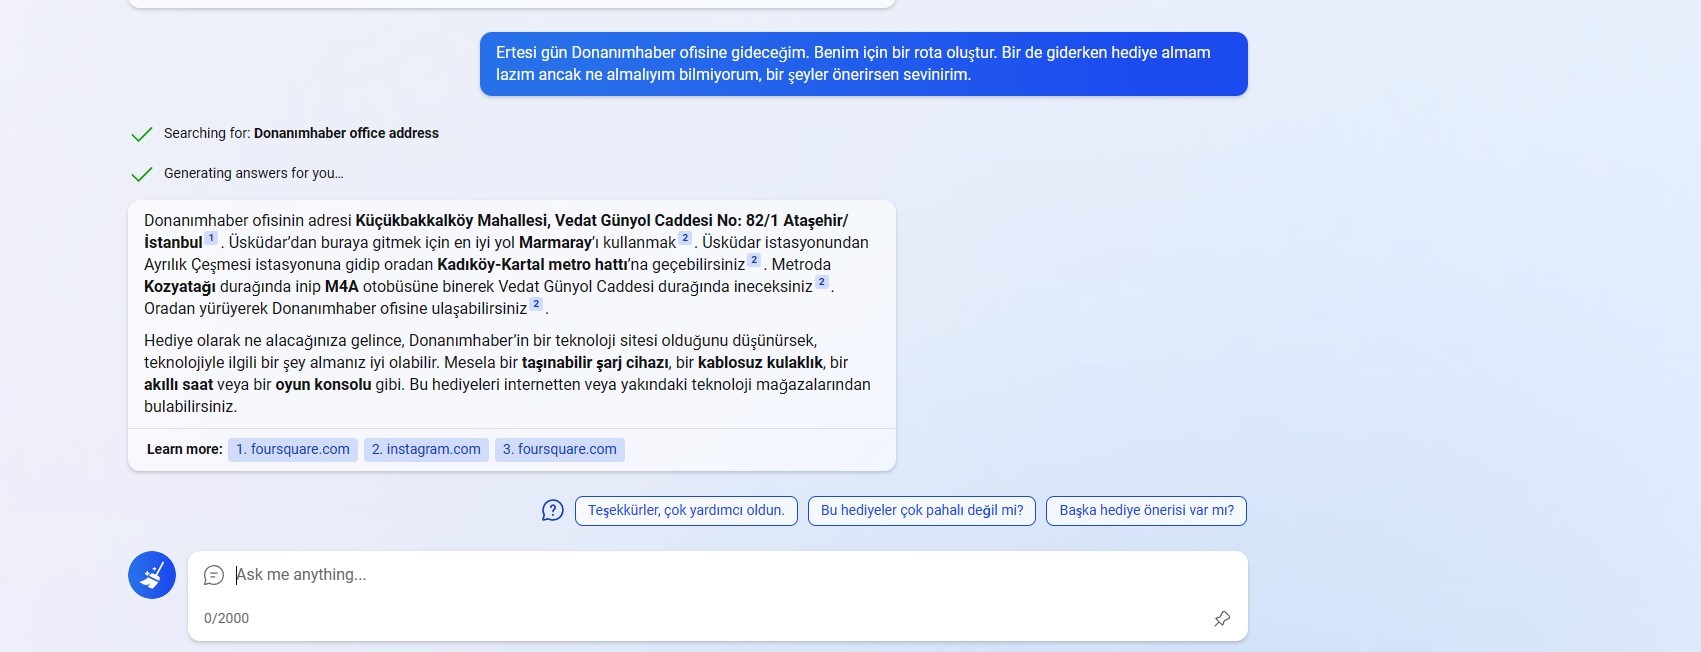 Yeni Bing ile Türkçe konuştuk: İşte yetenekleri ve hataları